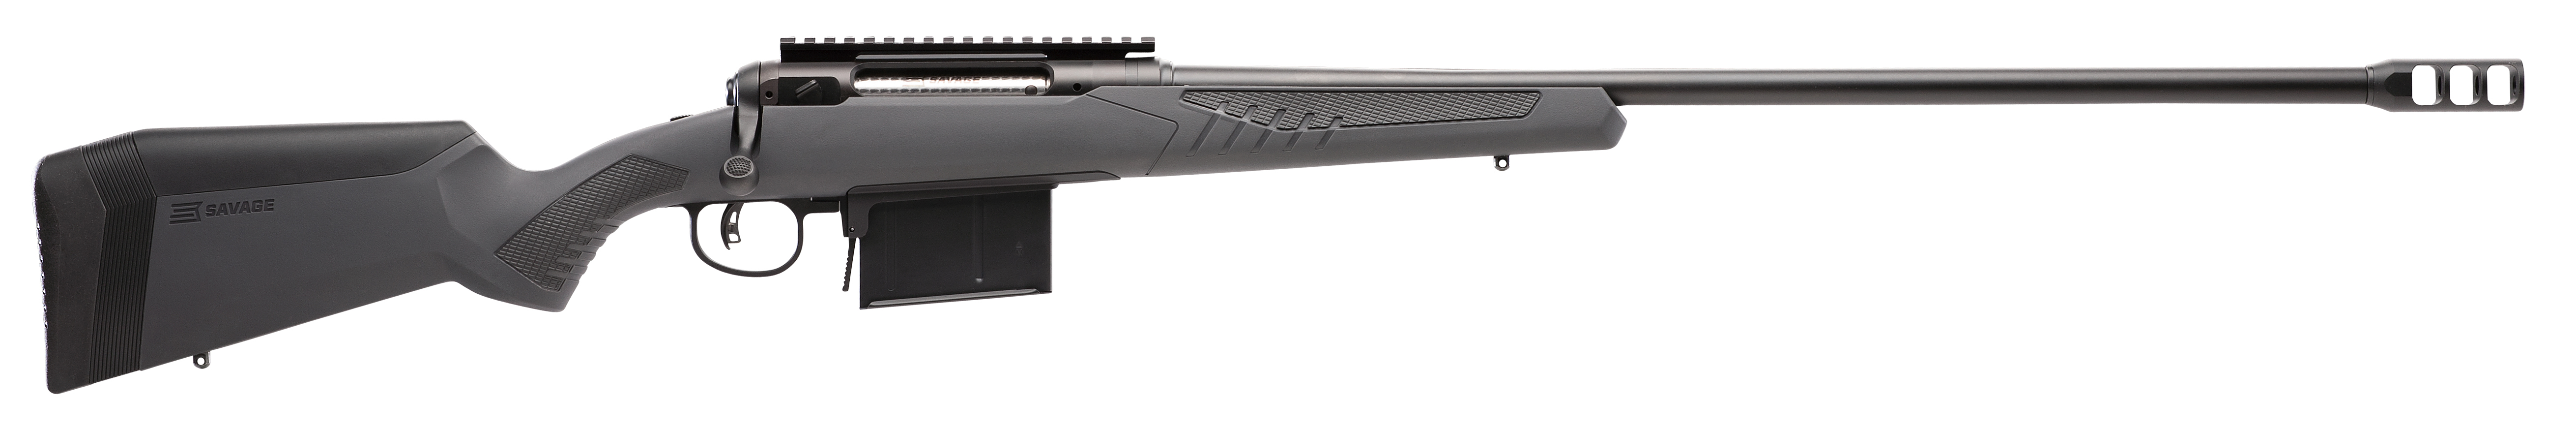 Model 110 Long Range Hunter